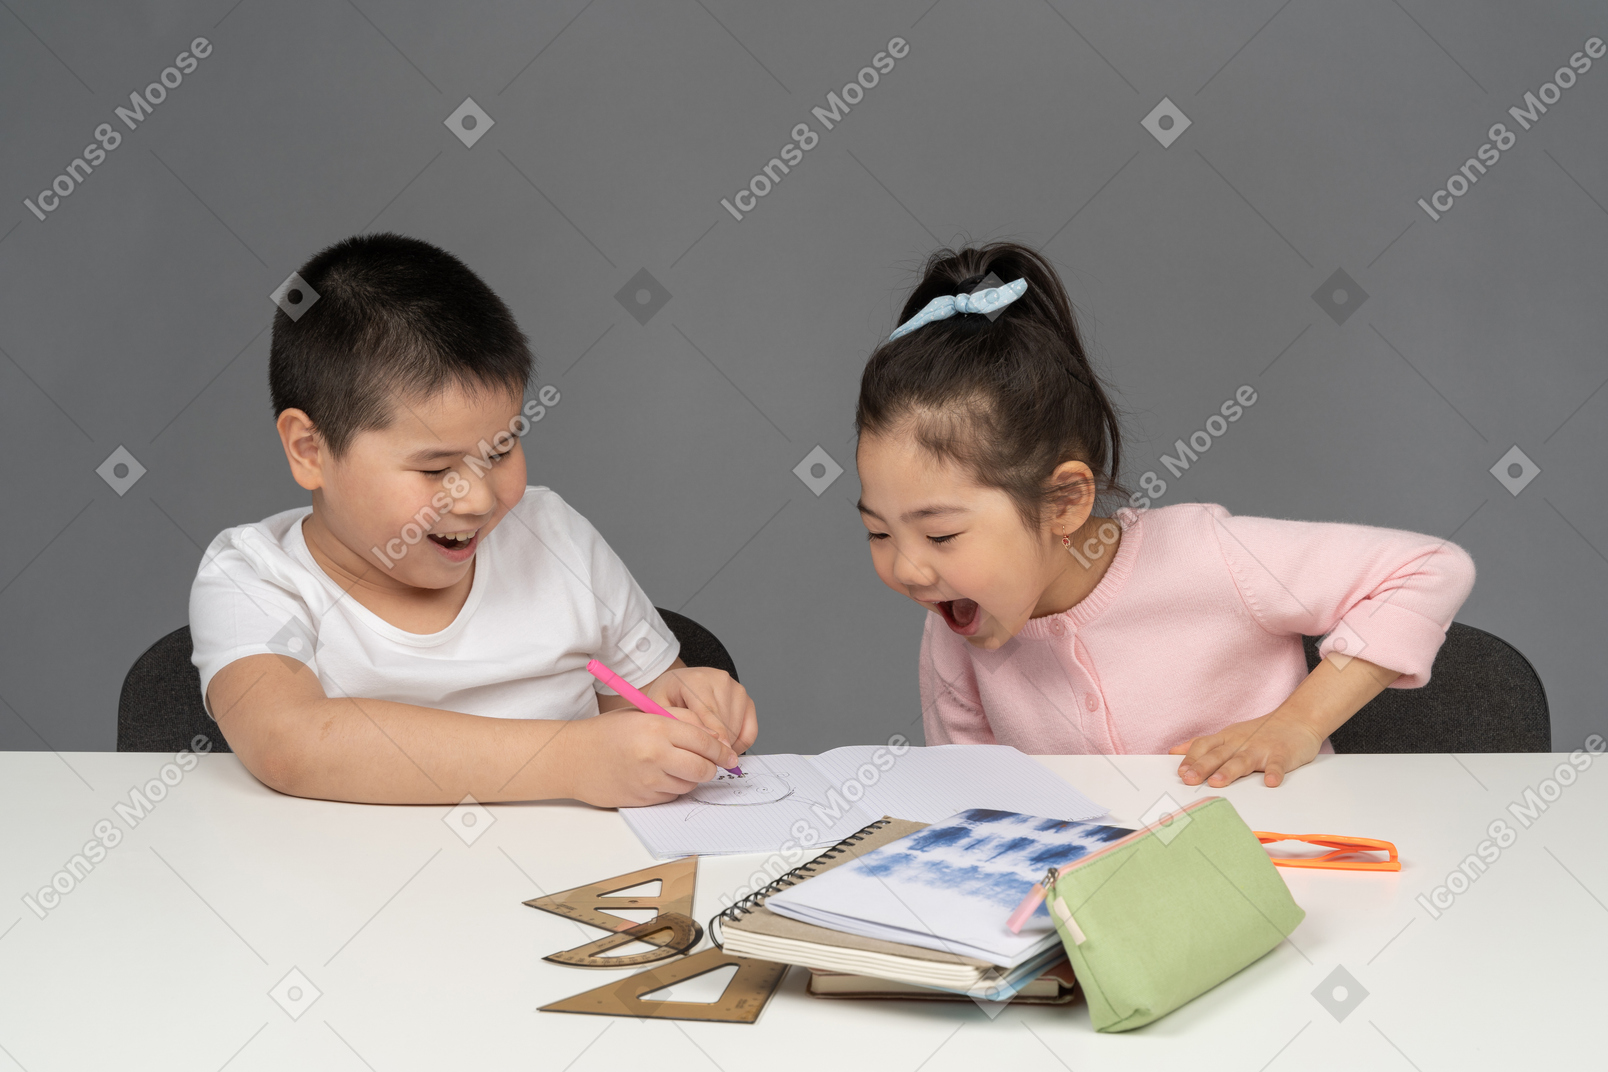 男孩和女孩一边做作业一边笑